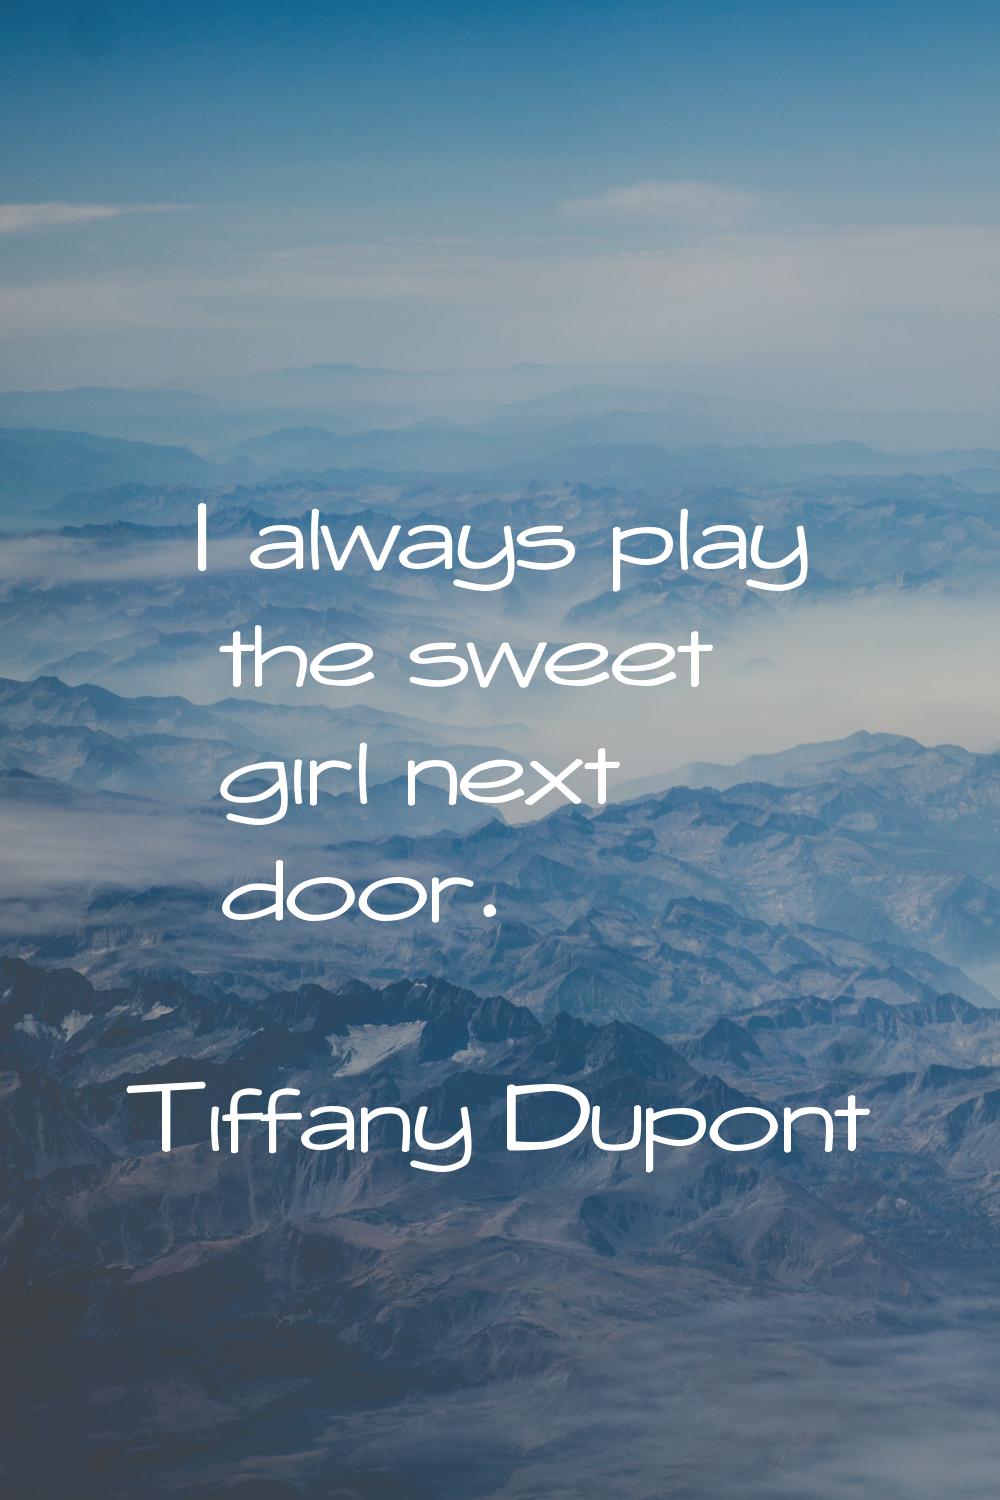 I always play the sweet girl next door.